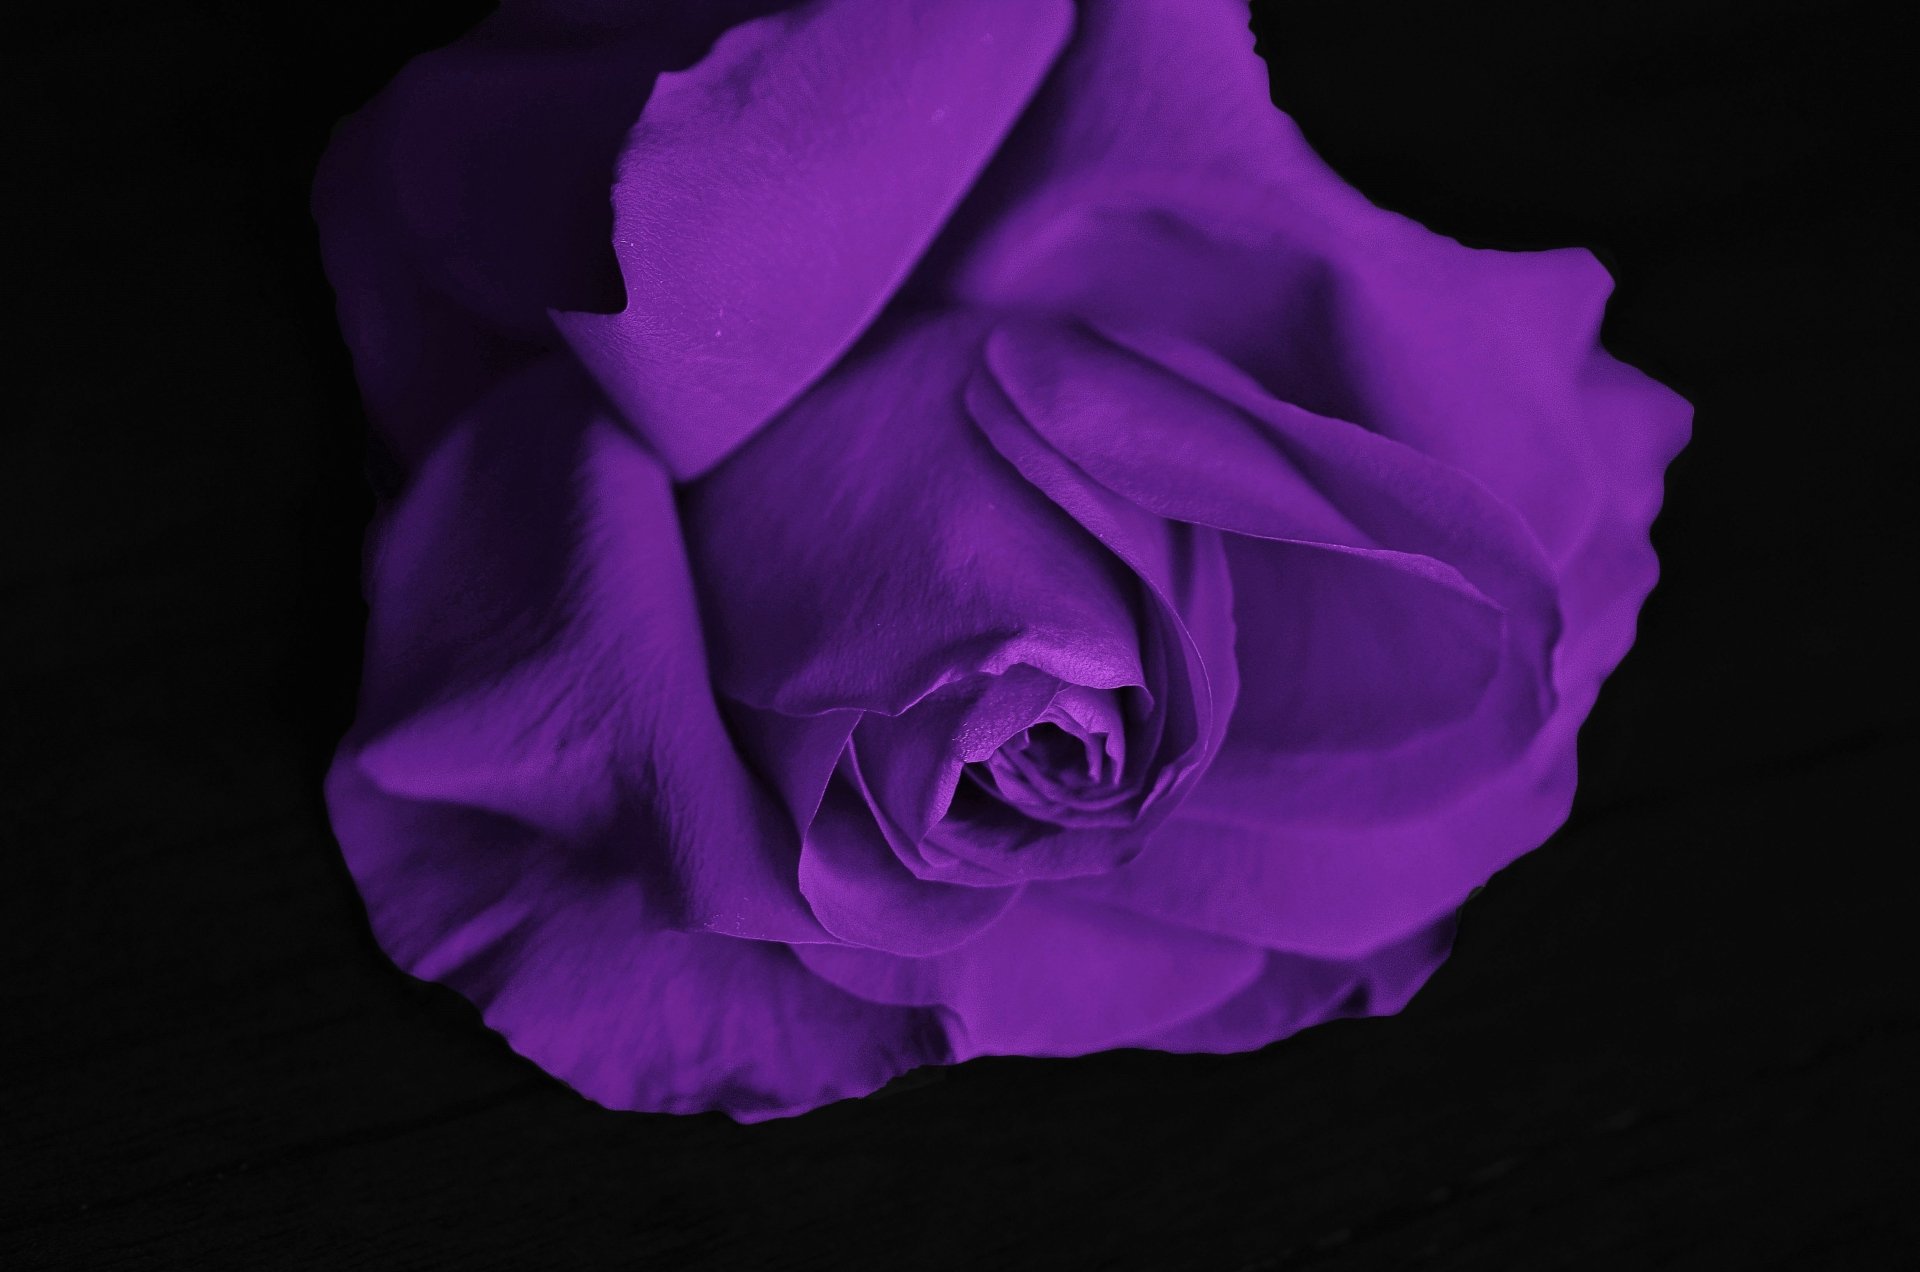 purple rose wallpaper for desktop full size